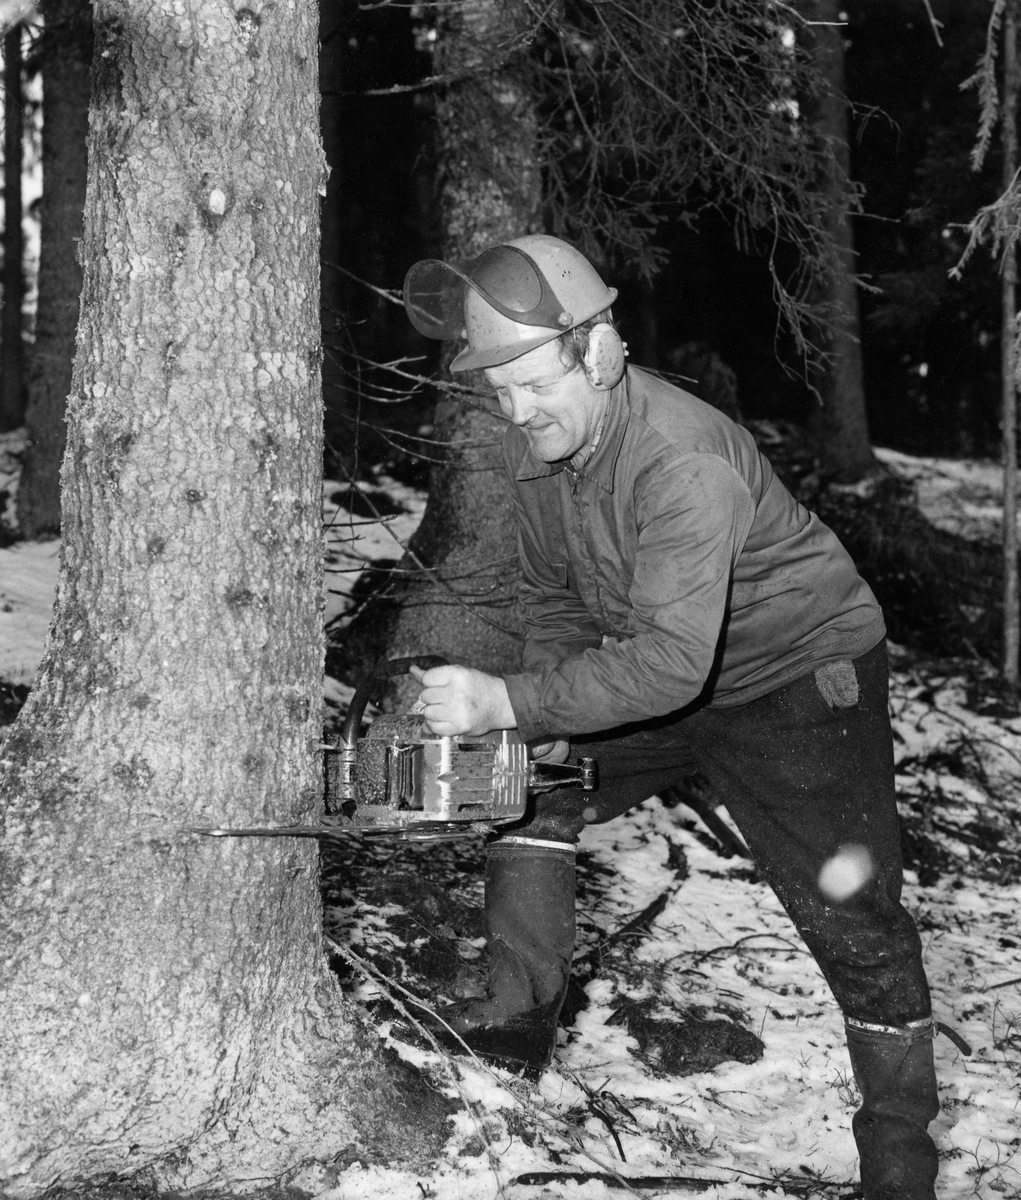 Skogsarbeideren og forfatteren Hans Børli (1918-1989) i arbeid med motorsaga i 1969.  Fotografiet er tatt med blits i forholdsvis mørk granskog.  Børli sto med sagsverdet mot rotsonen på ei gran, tilsynelatende klar til å lage et felleskår.  Han var kledd i mørke vadmelsbukser, hadde beavernylonjakke på overkroppen og hjelm med visir og øreklokker på hodet.  Fottøyet var gummistøvler.  Visiret på hjelmen var oppslått, antakelig for å gjøre det mulig for fotografen å ta et portrettbilde.  Det er tvilsomt om saga var i gang.  Hans Børli var født og oppvokst på et lite, avsidesliggende bruk i Eidskog i Sør-Hedmark.  Han hadde skogsarbeid som hovedyrke, men var også en meget produktiv forfatter.  Han gav ut 23 diktsamlinger (+ 3 utgivelser som kom posthumt), og det er først og fremst som lyriker han har høstet anerkjennelse.  Men Børli har også utgitt litteratur av mer fortellende karakter, herunder også en sjølbiografi.  Mye av det han skrev hentet motiver fra det miljøet han levde og arbeidet i, og han omtales derfor ofte som «skogens dikter».  Børli var ellers en samfunnsengasjert mann, og han skrev også om livssyn, angst og død.  Mange av diktene hans har fått melodier, og noen er oversatt til andre språk.  Børli fikk Kritikerprisen i 1970 og Dobloug-prisen i 1972.  Tidlig på 1970-tallet var han også nominert til Nordisk råds litteraturpris.